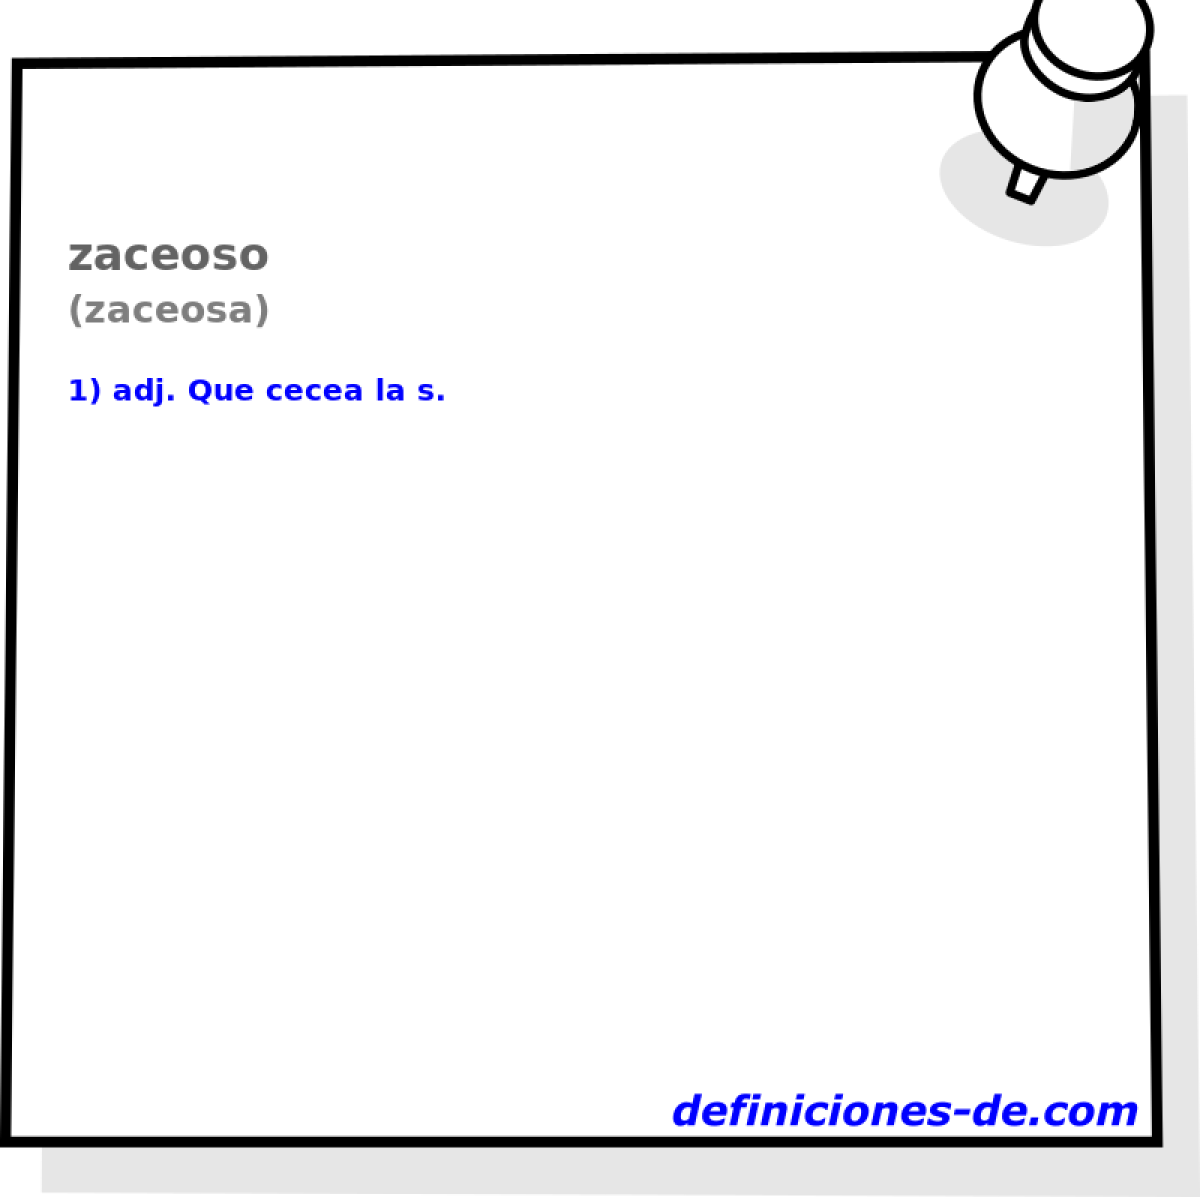 zaceoso (zaceosa)